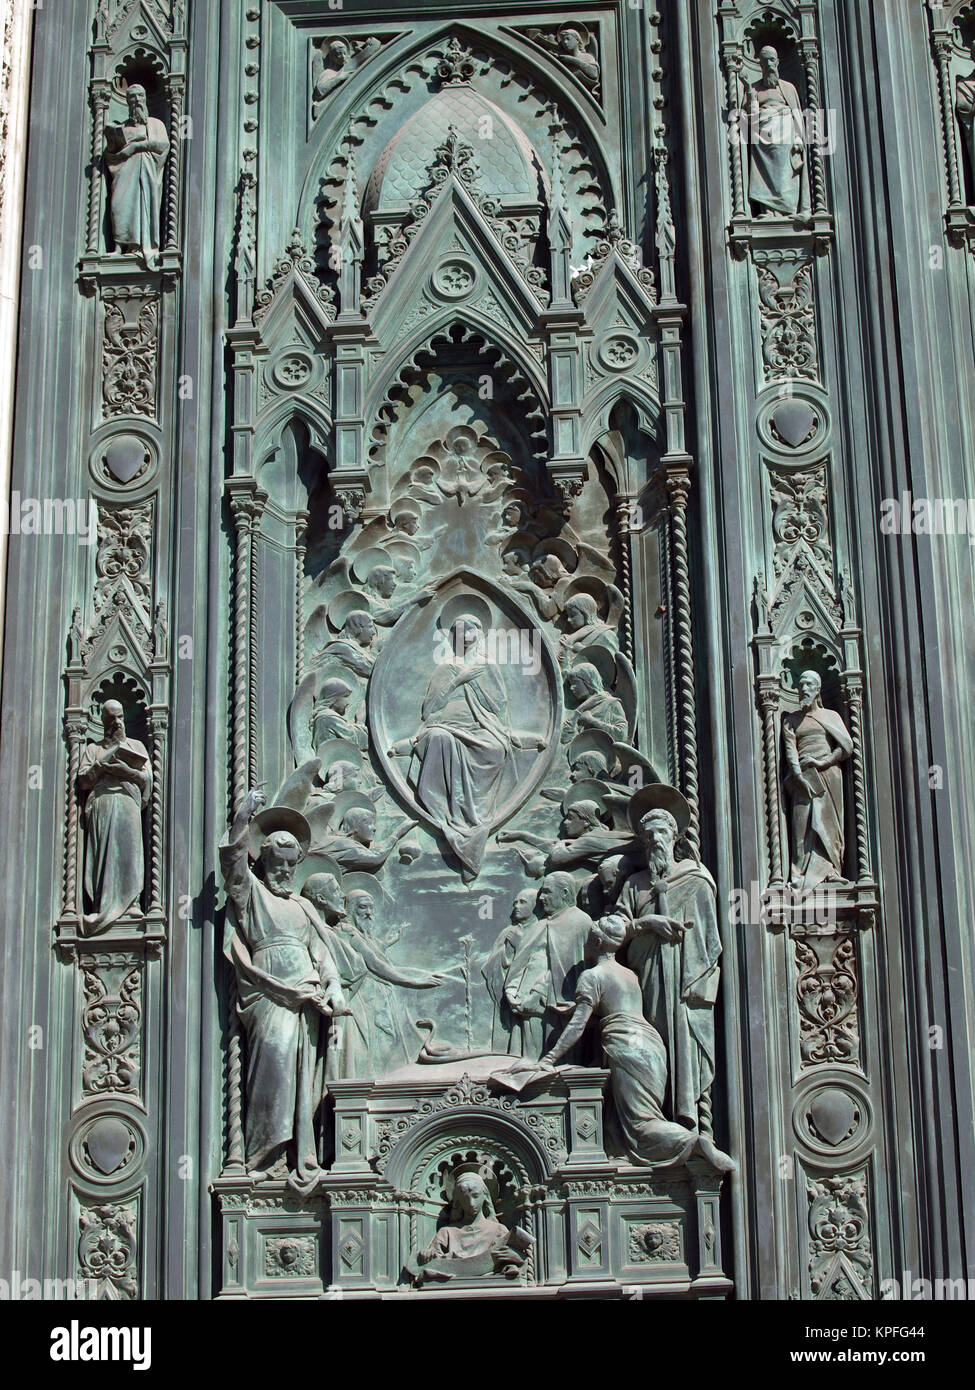 Basilica of Santa Maria del Fiore - Florence Stock Photo